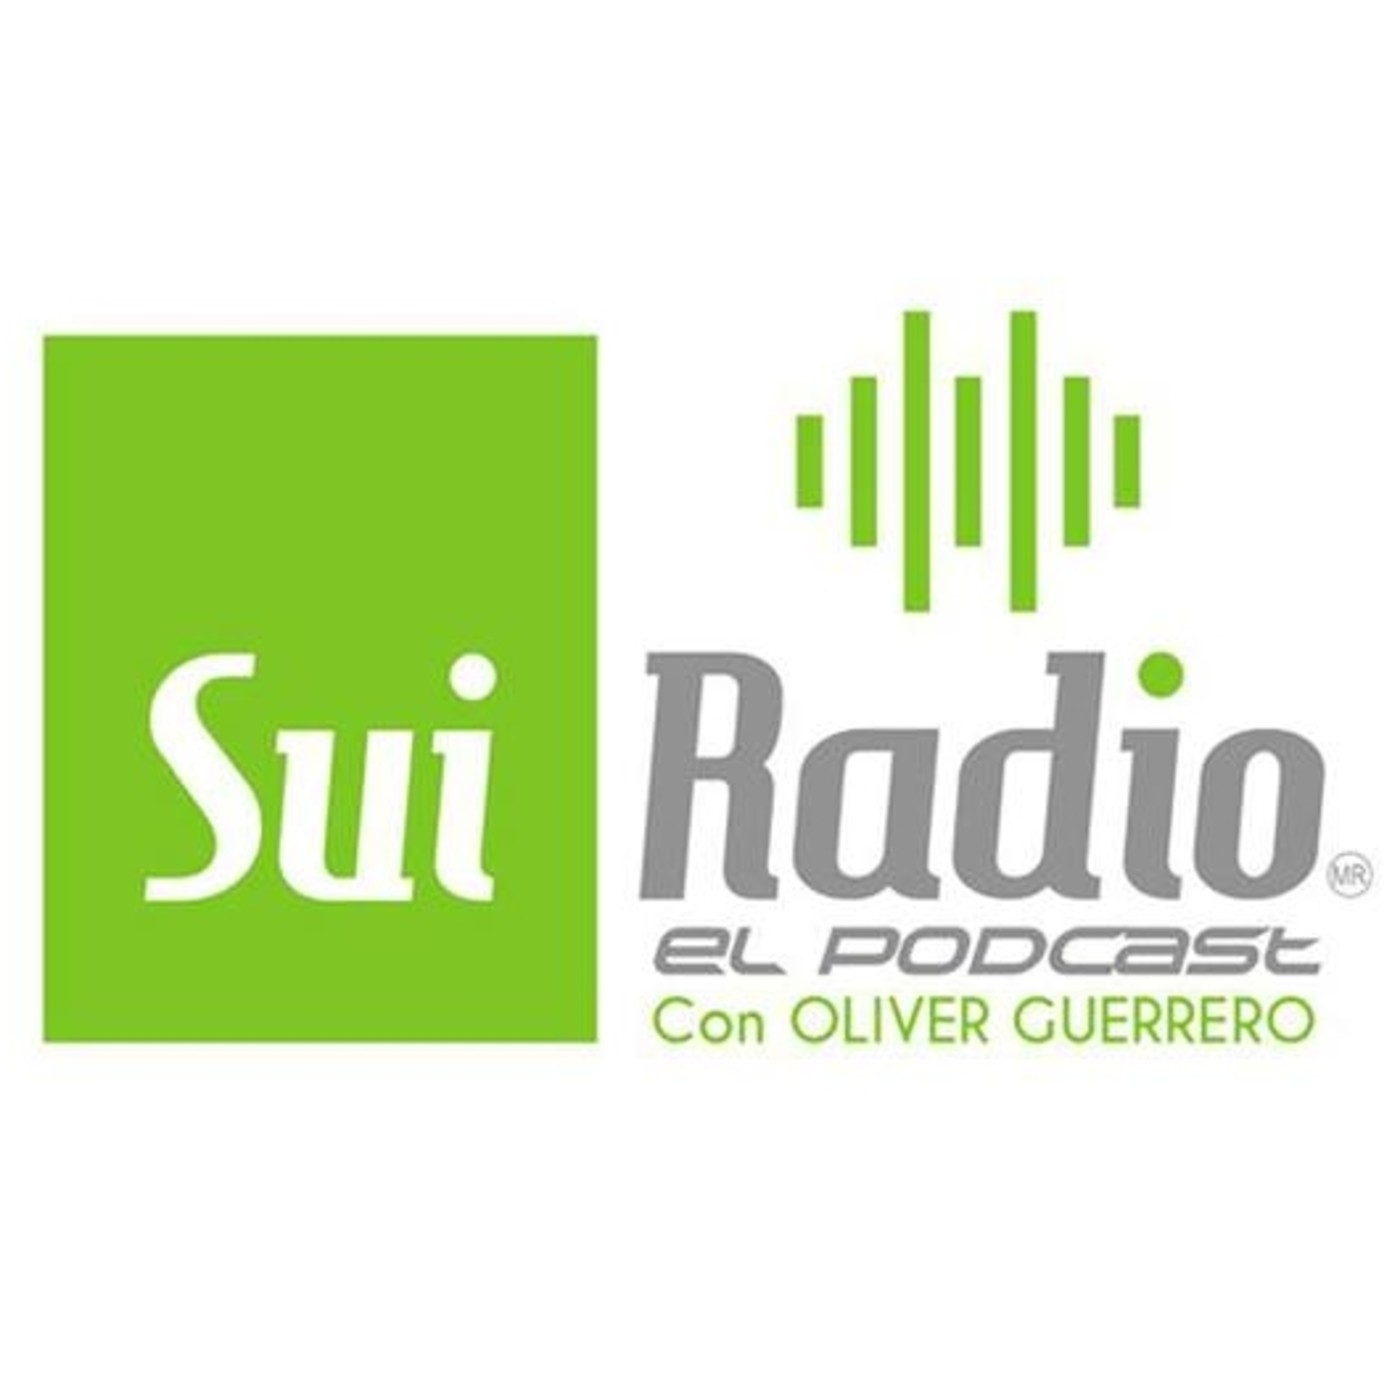 Recuerdos de Stereo Rey y Stereo Juventud 99.5,La Radio 80s y 90 en México, Podcast, Exitos en Ingles, Baladas Ingles